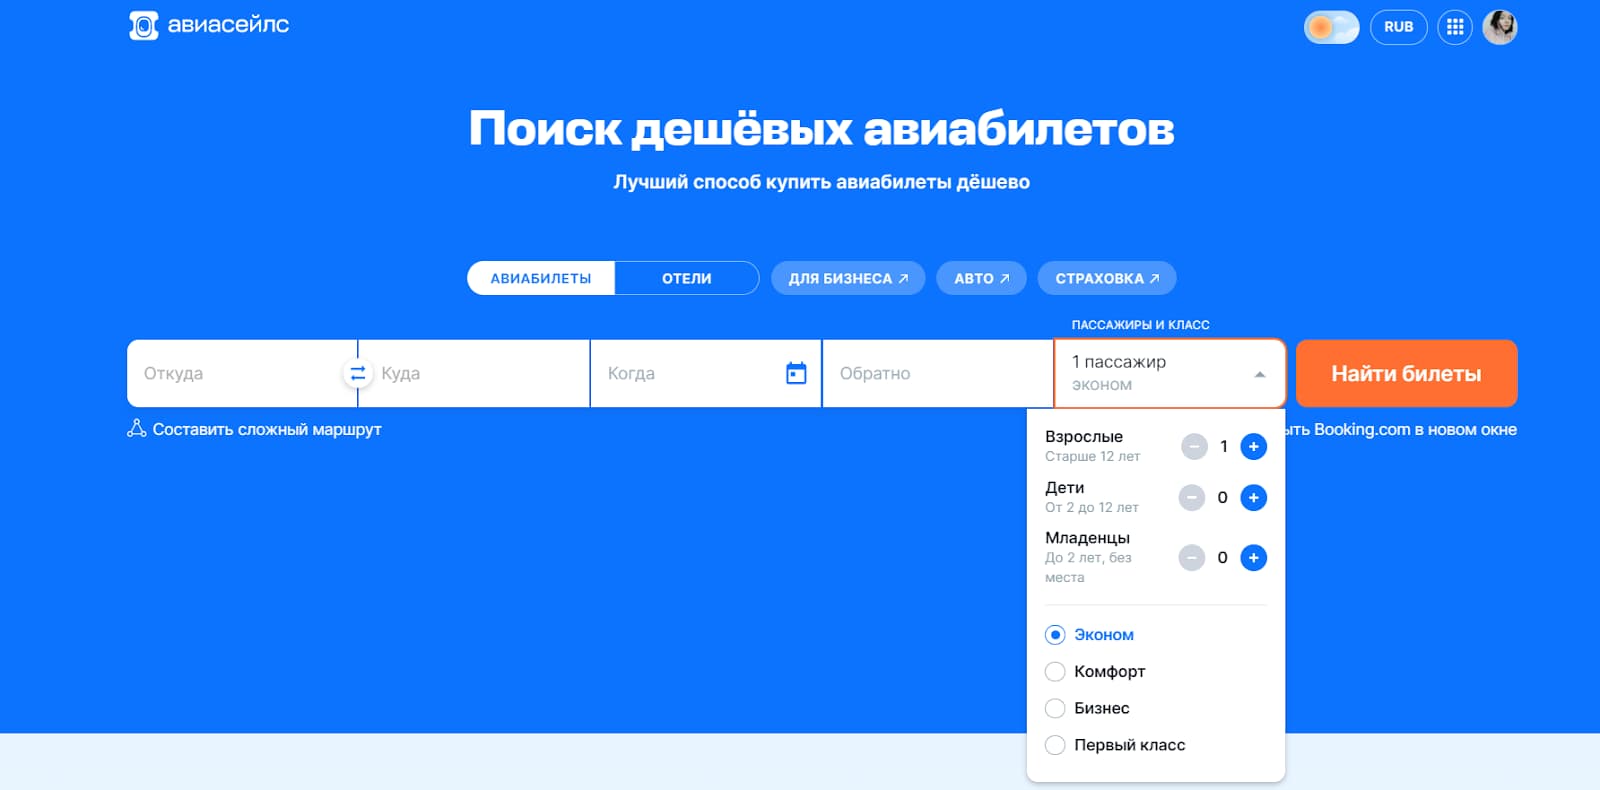 Первый экран главной страницы aviasales.ru